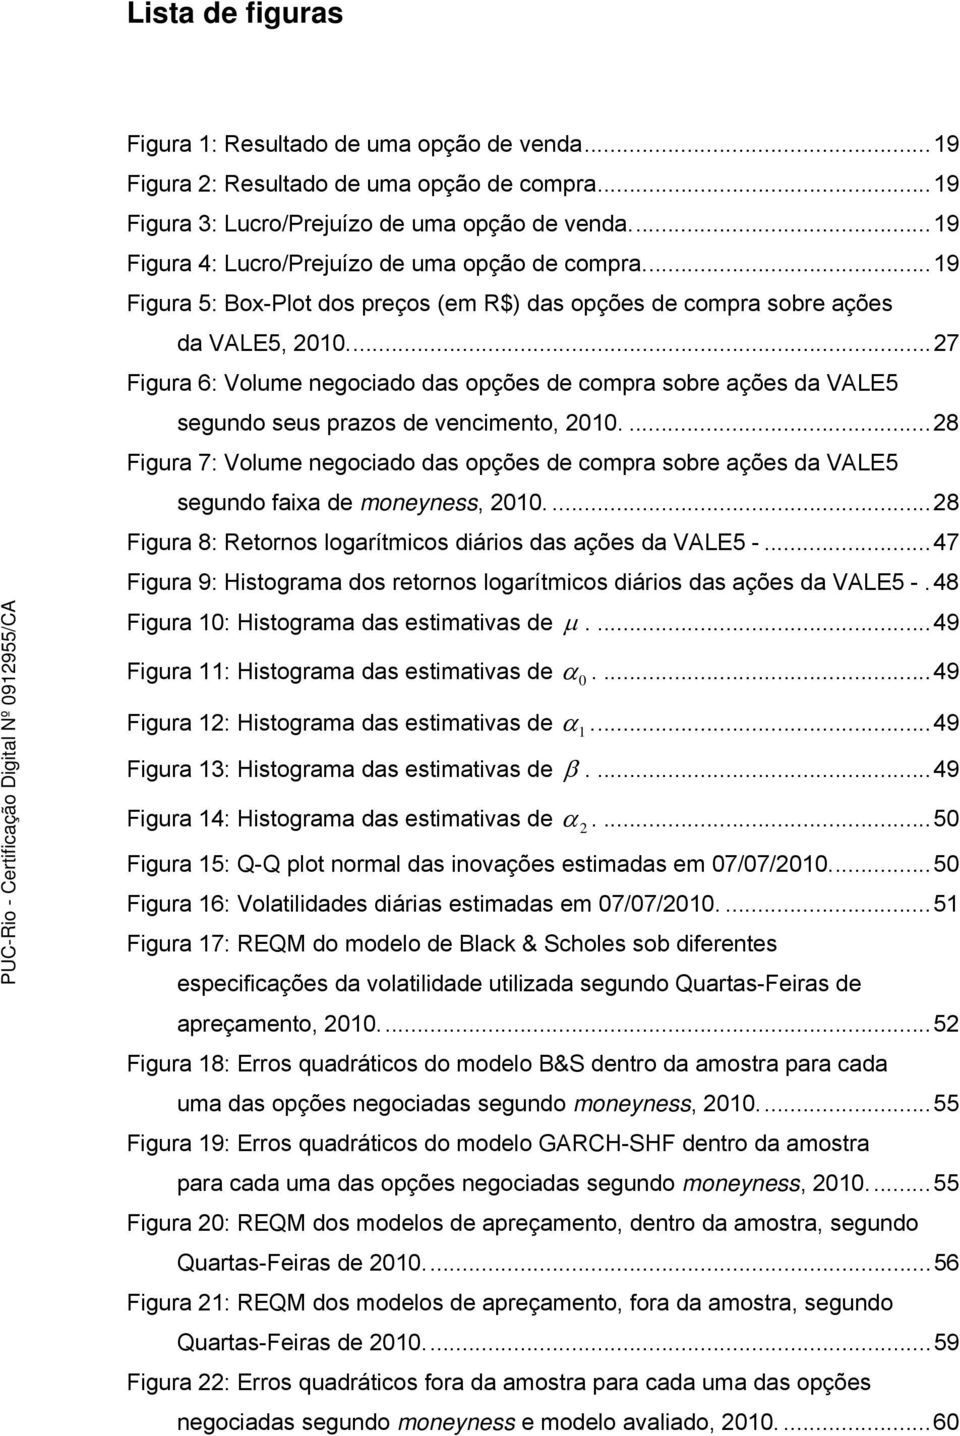 ... 27 Figura 6: Volume negociado das opções de compra sobre ações da VALE5 segundo seus prazos de vencimento, 2010.